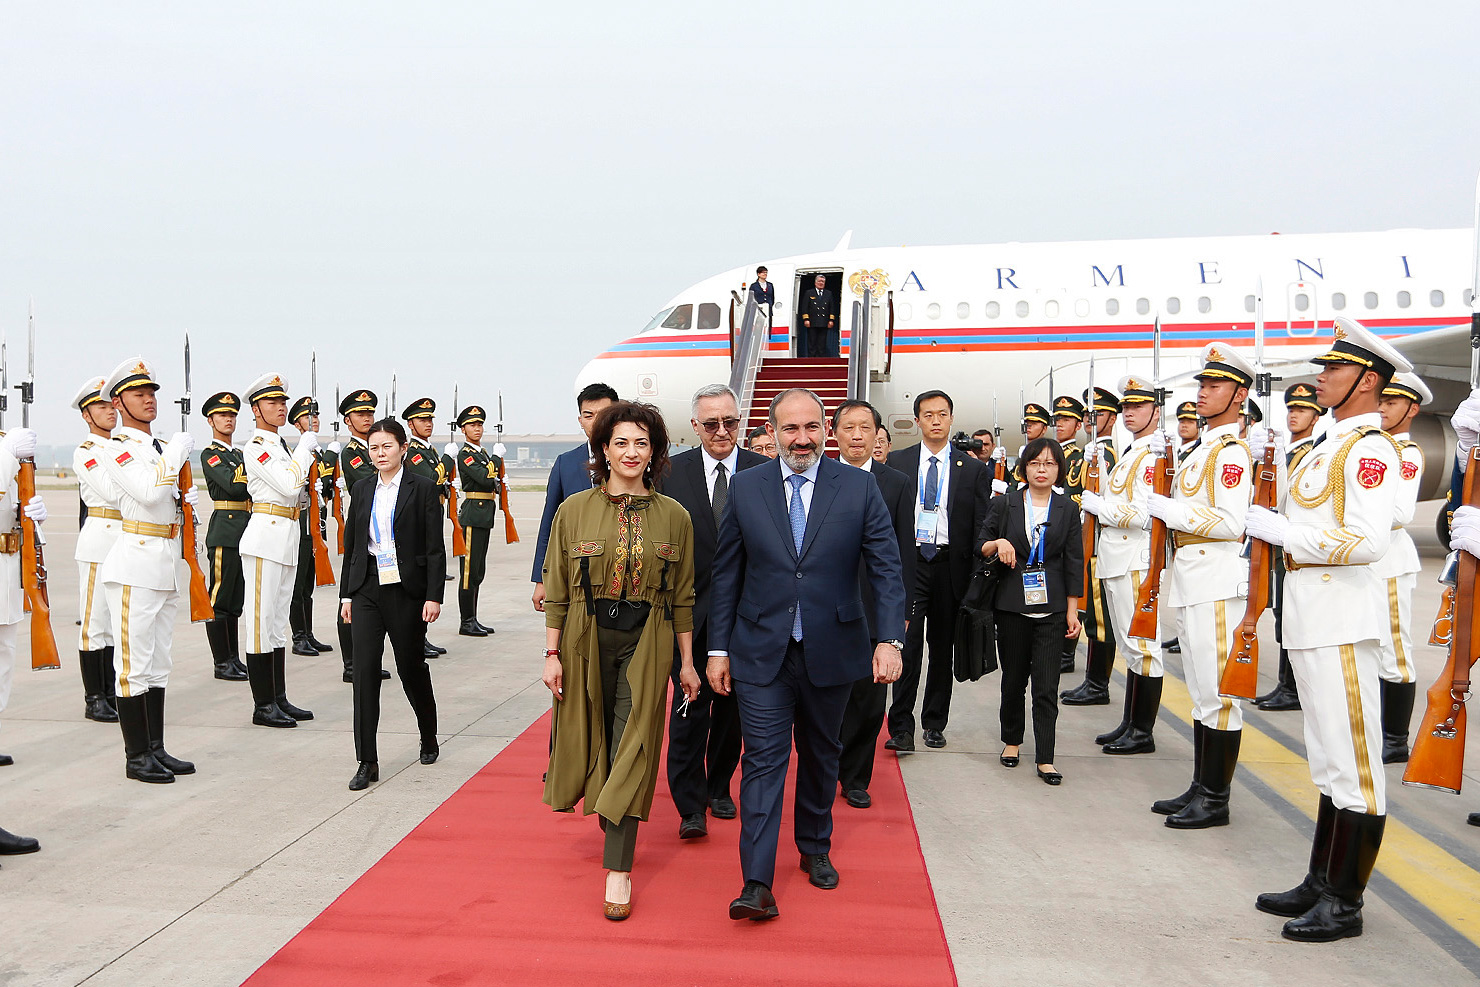 Ավարտվեց Նիկոլ Փաշինյանի այցը Չինաստան. վարչապետի գլխավորած պատվիրակությունը վերադառնում է Հայաստան